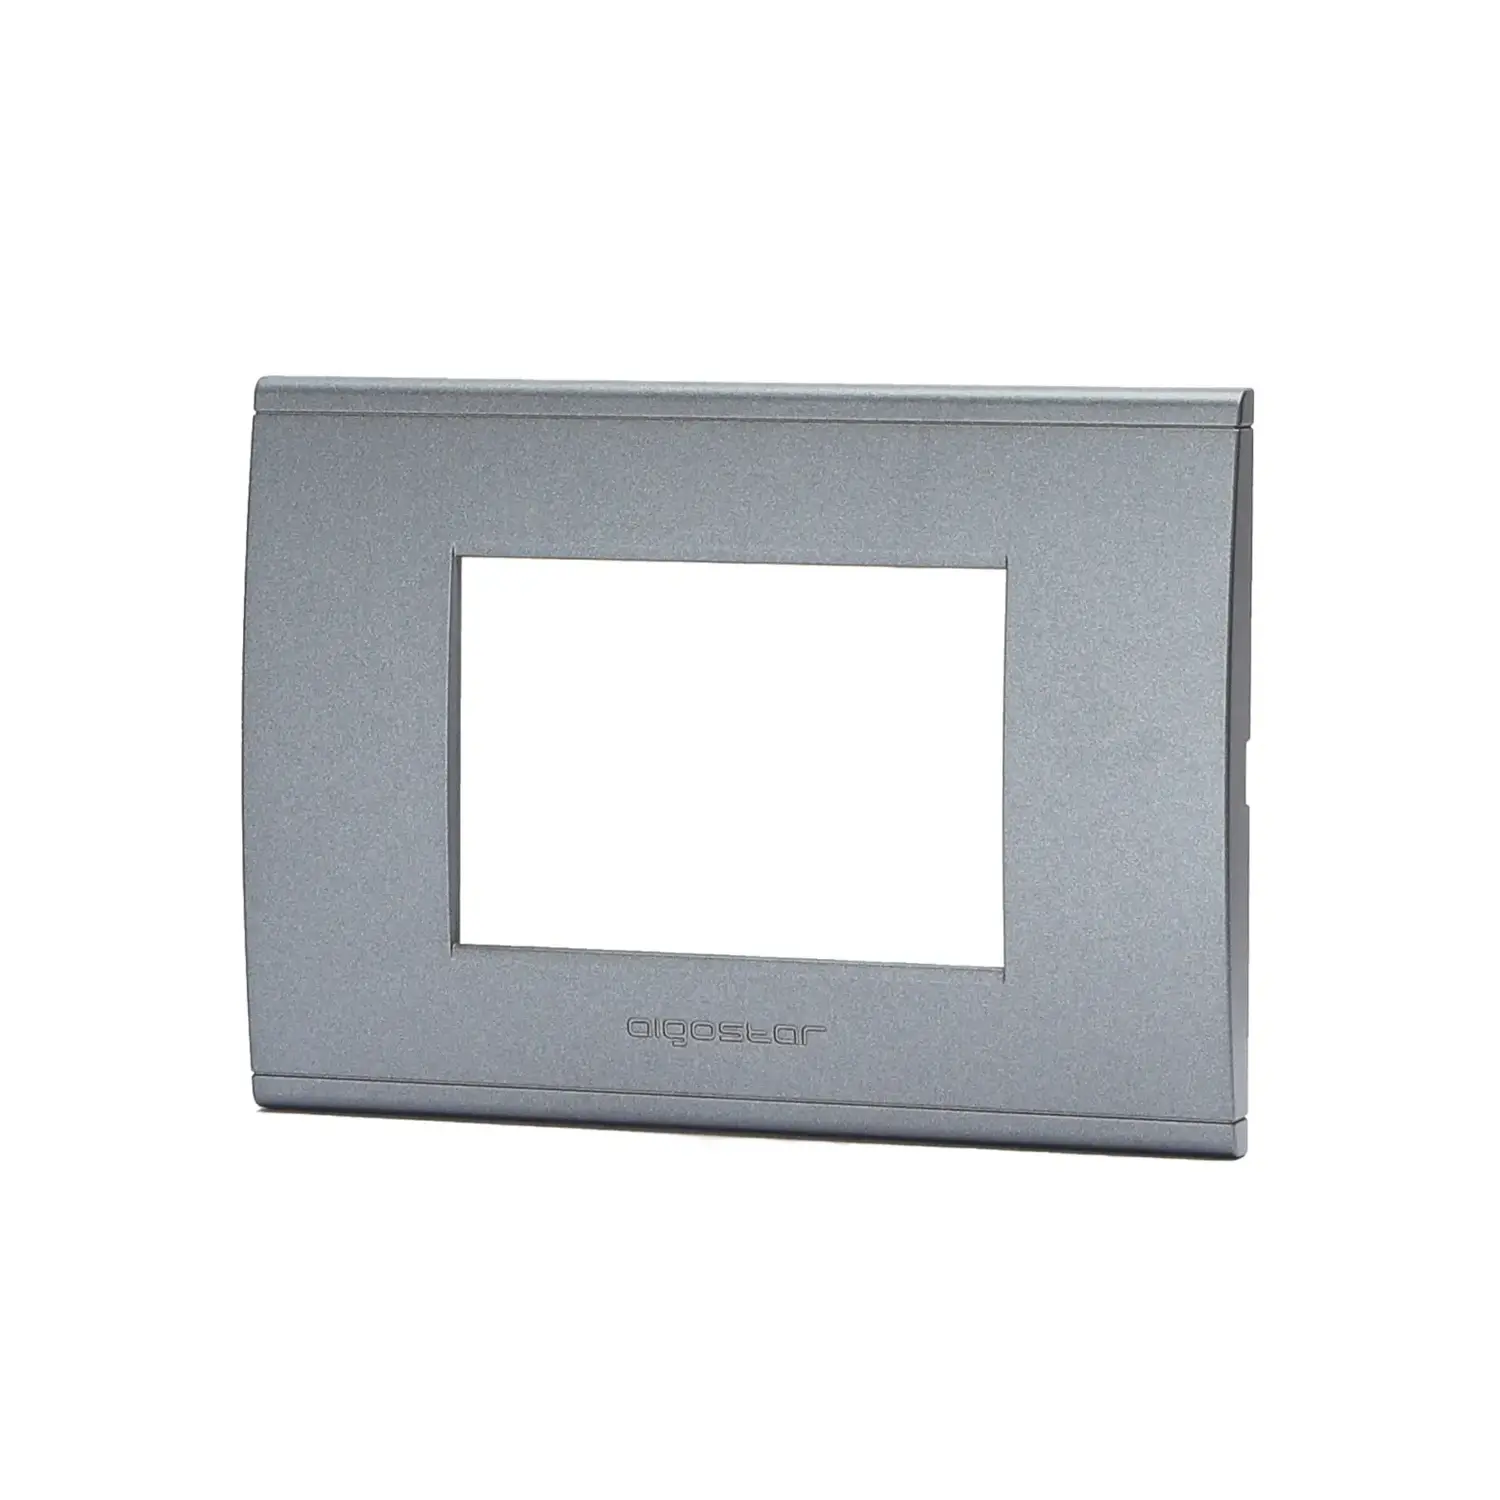 immagine del prodotto placca di plastica compatibile bticino livinglight international grigio 3 fori